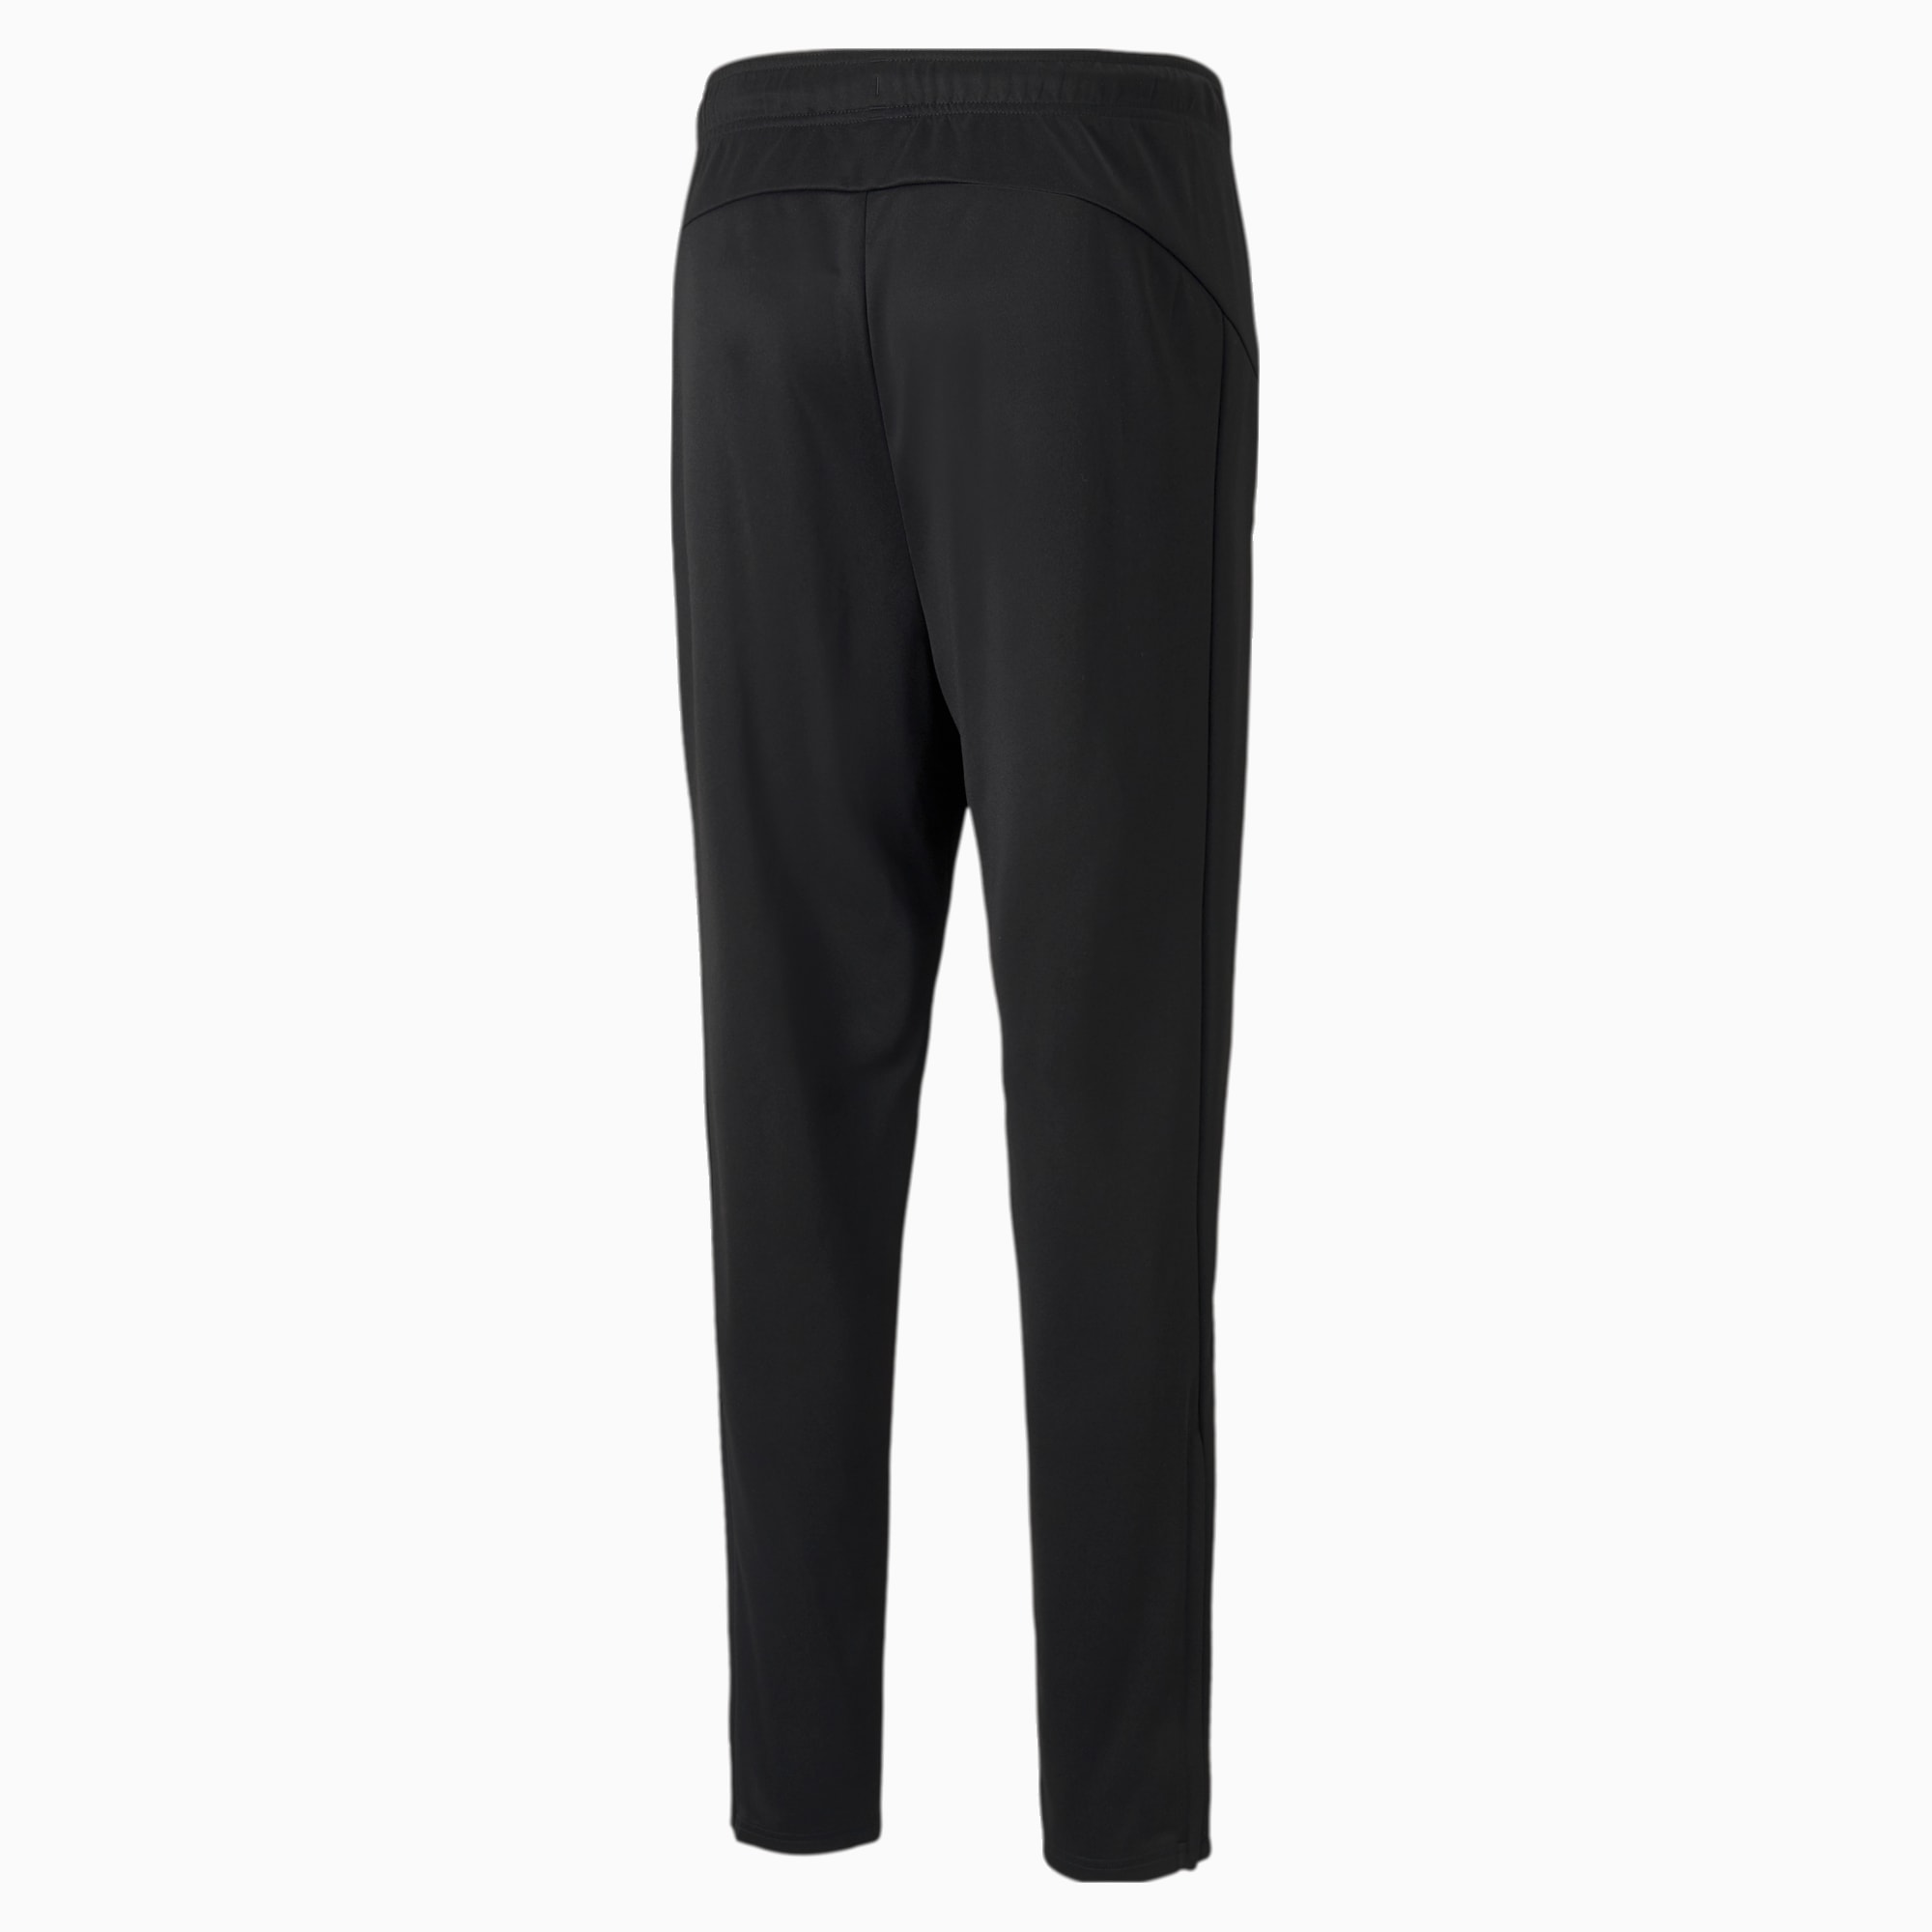 PUMA Active Tricot Men's Sweatpants, Black, Size L, Clothing